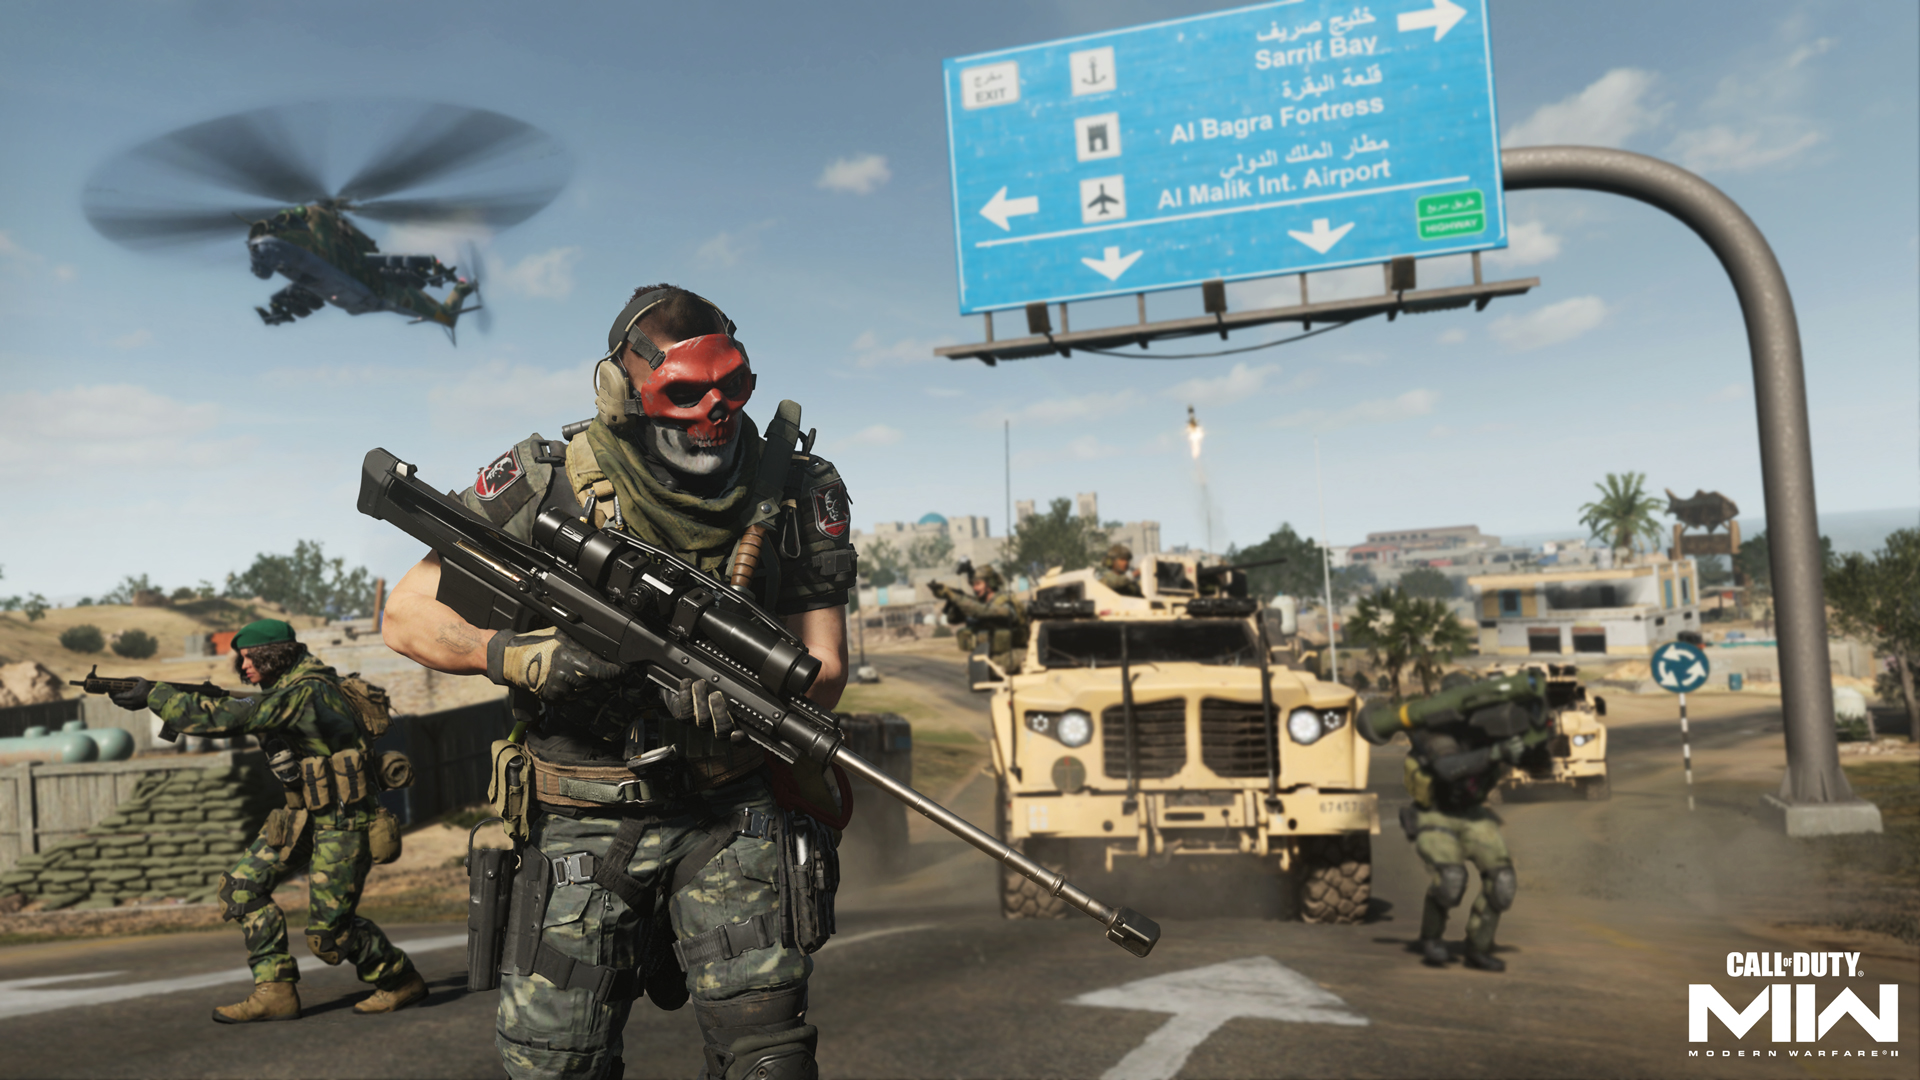 Phần chơi đơn của Call of Duty: Modern Warfare 2 hấp dẫn